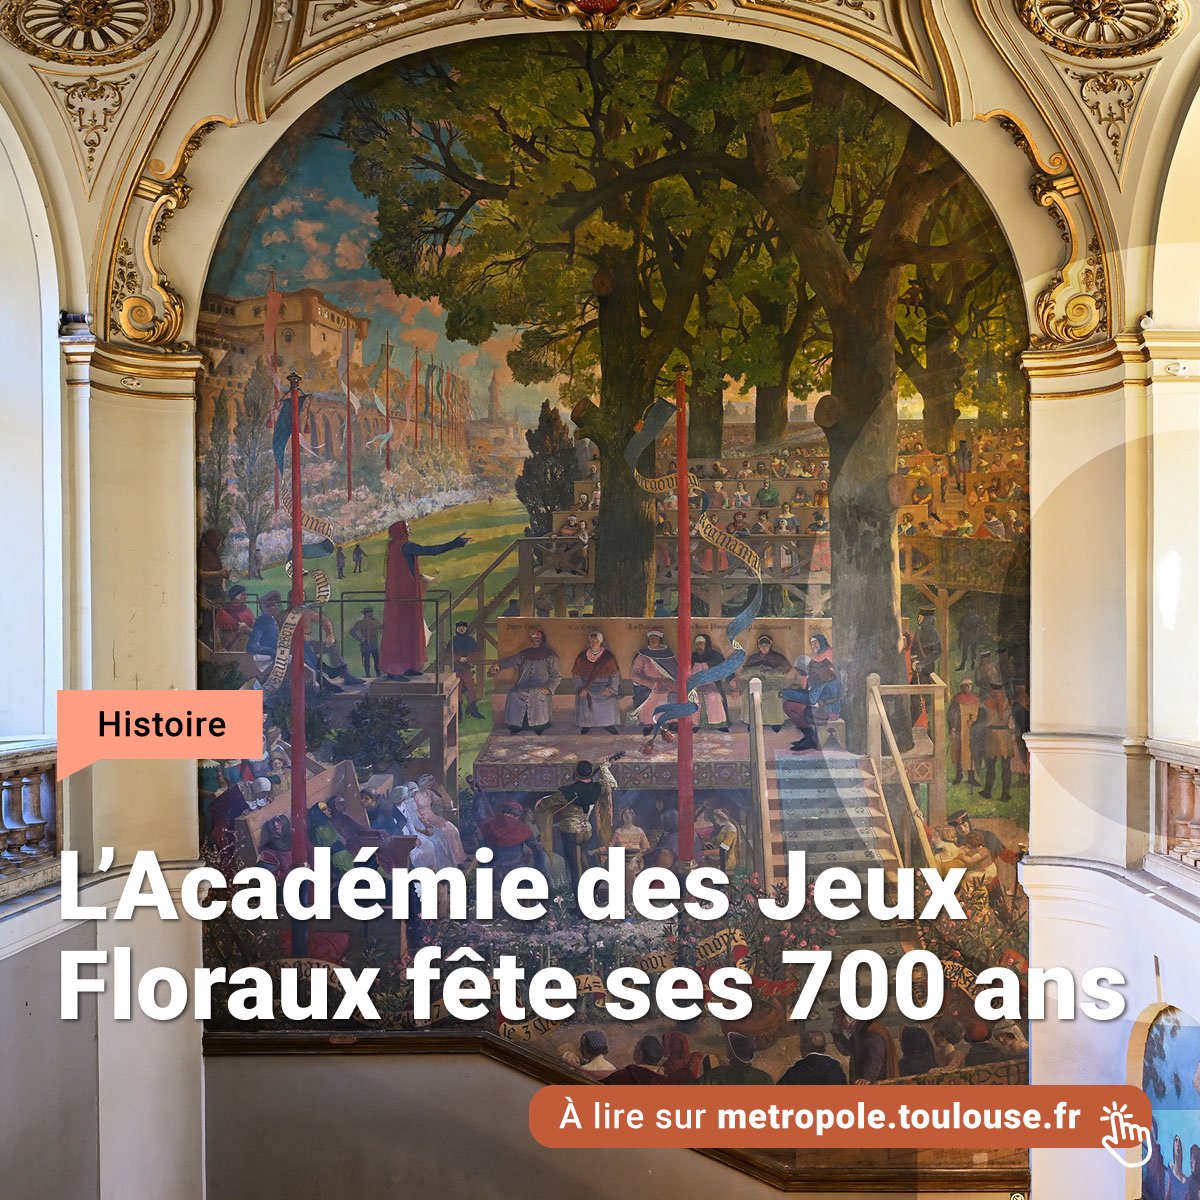 🌼 Pour célébrer les 700 ans de l’Académie des Jeux Floraux et honorer la langue d’oc, la Mairie de Toulouse a baptisé un nouveau jardin, situé en bordure de la Garonne. Une programmation culturelle est également proposée. 🔗 bit.ly/3WjS8gE